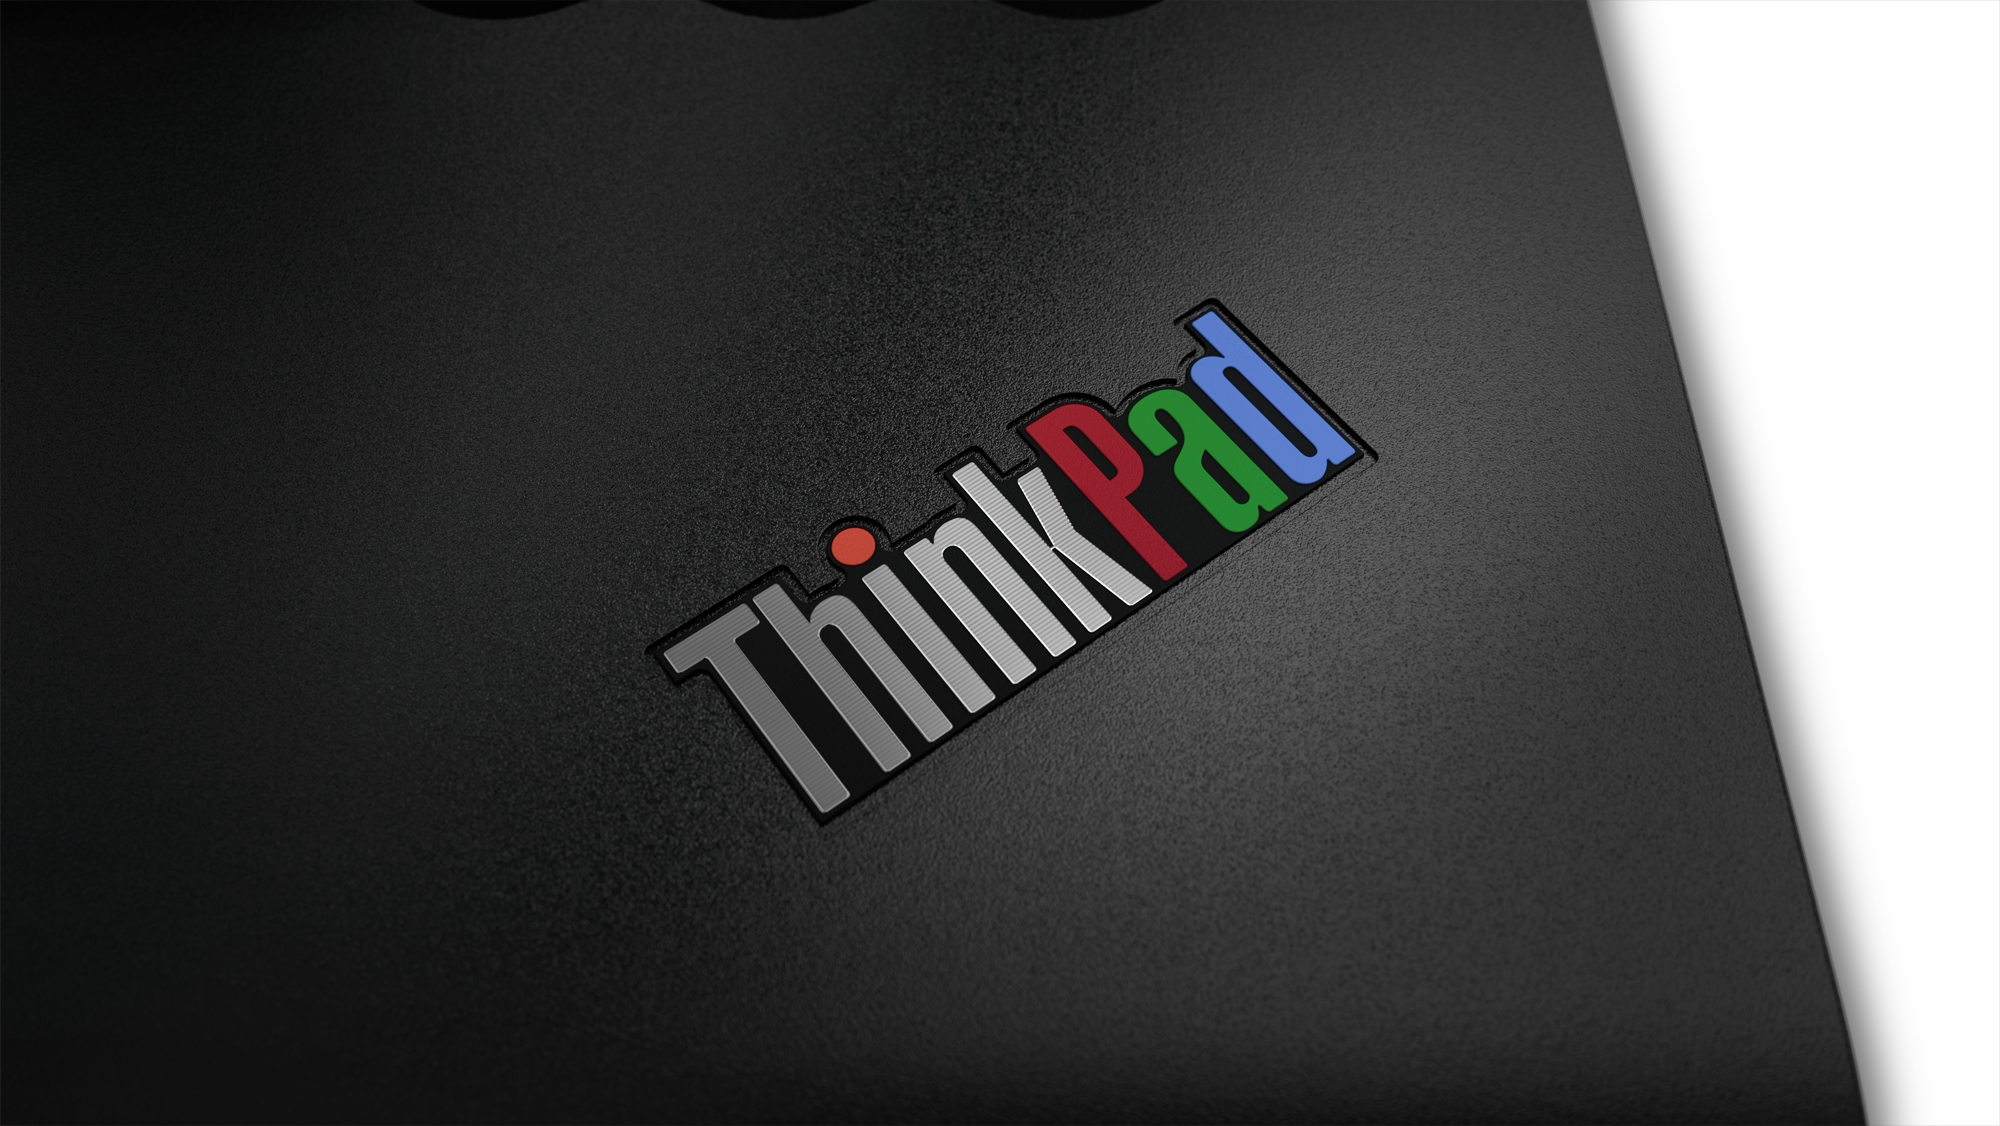 Lenovo chào mừng sinh nhật lần 25 với ThinkPad Anniversary Edition 25 phiên bản giới hạn